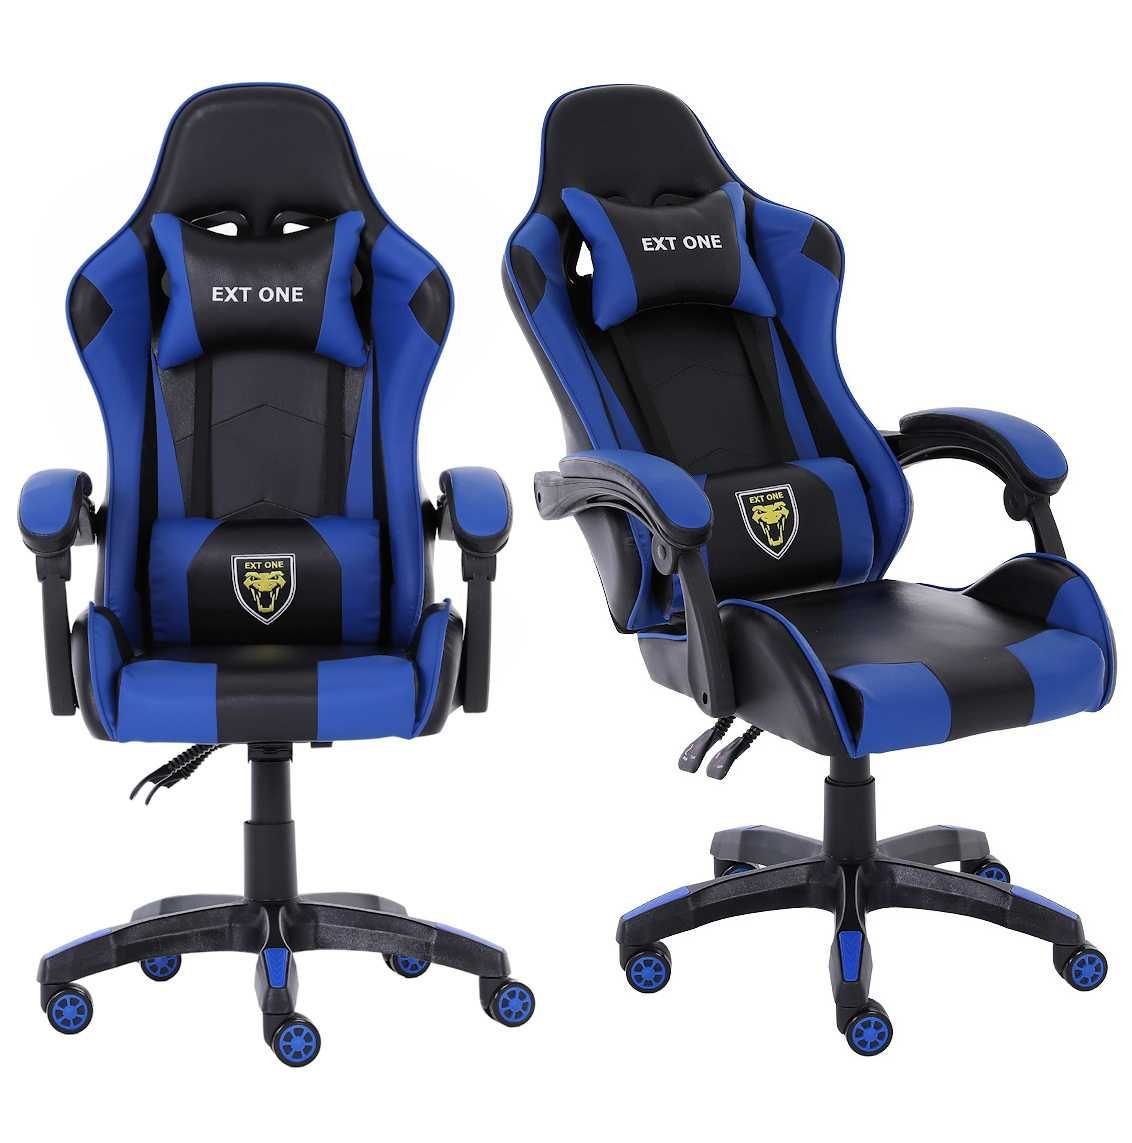 Krzesło do komputera Gamingowe dla Gracza Extreme Ext One Blue